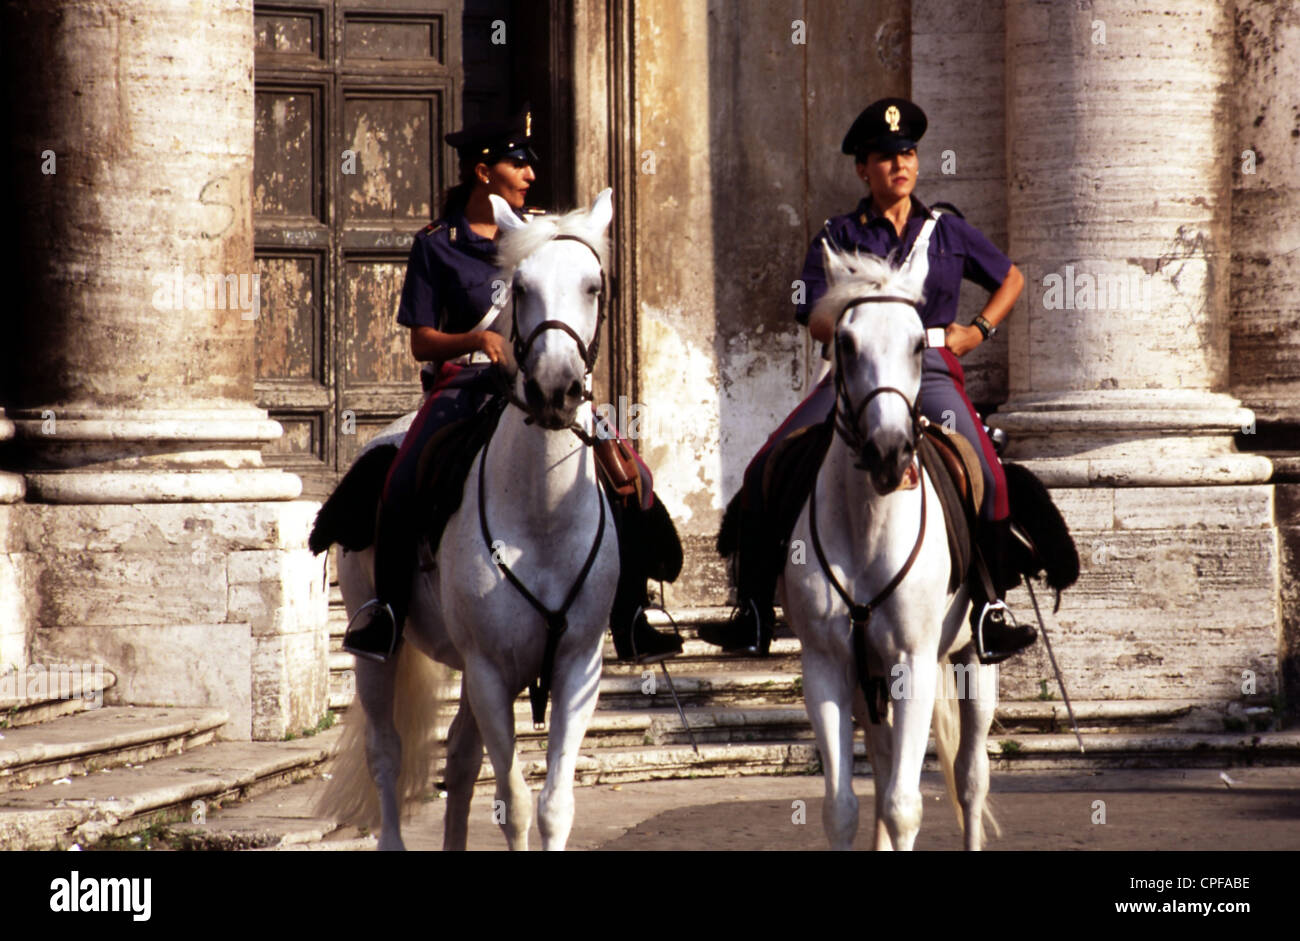 Policewomen on horseback Stock Photo